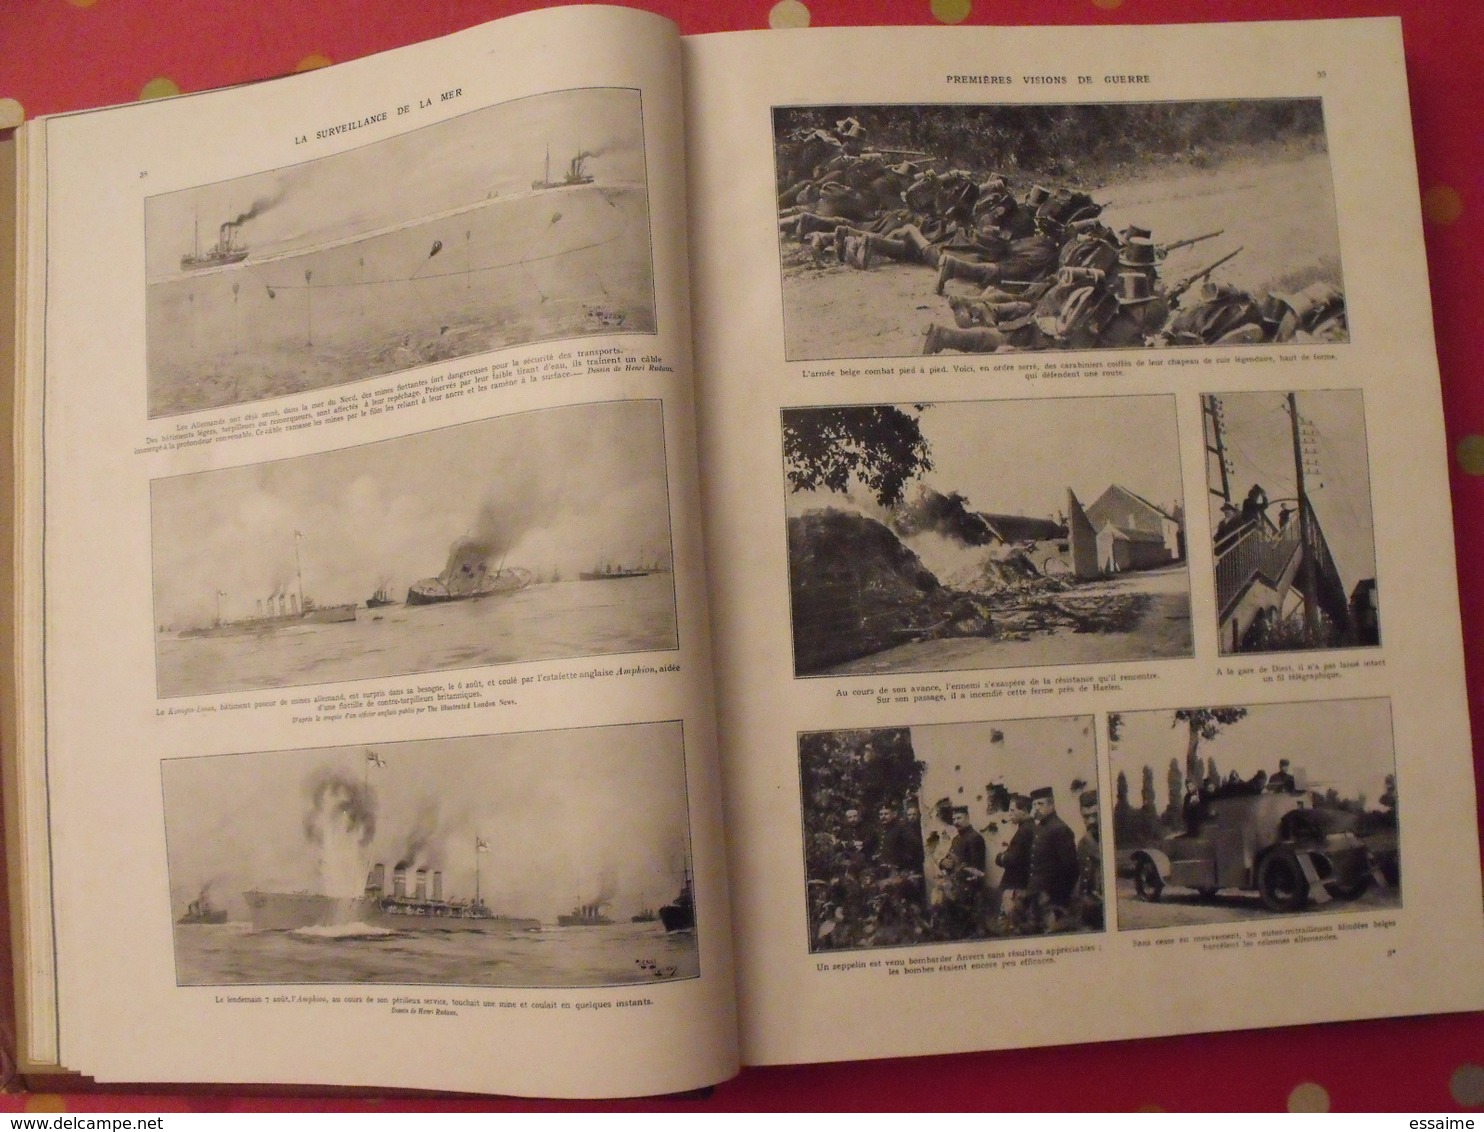 l'album de la guerre 1914 1919 en 2 tomes. très documenté (photos, dessins).  l'illustration 925. encart couleurs